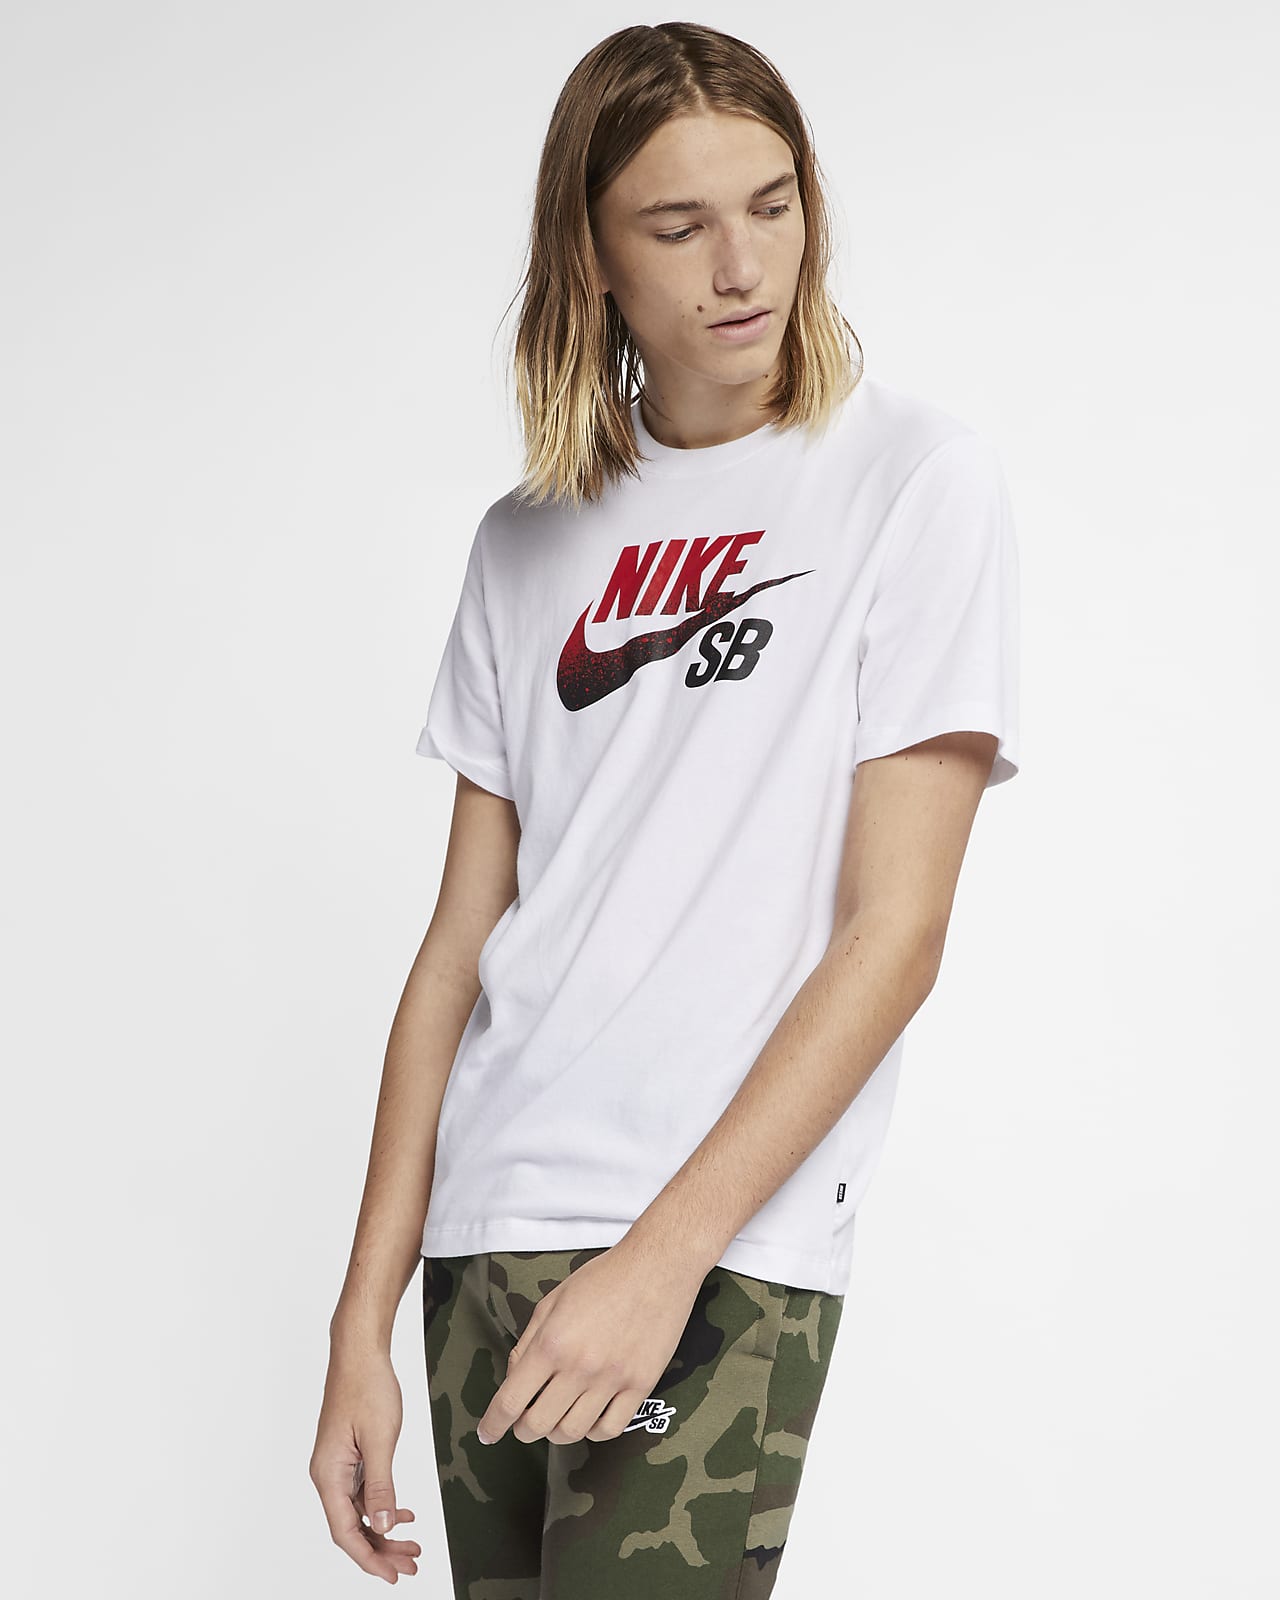 Nike SB Dri-FIT 男子滑板T恤